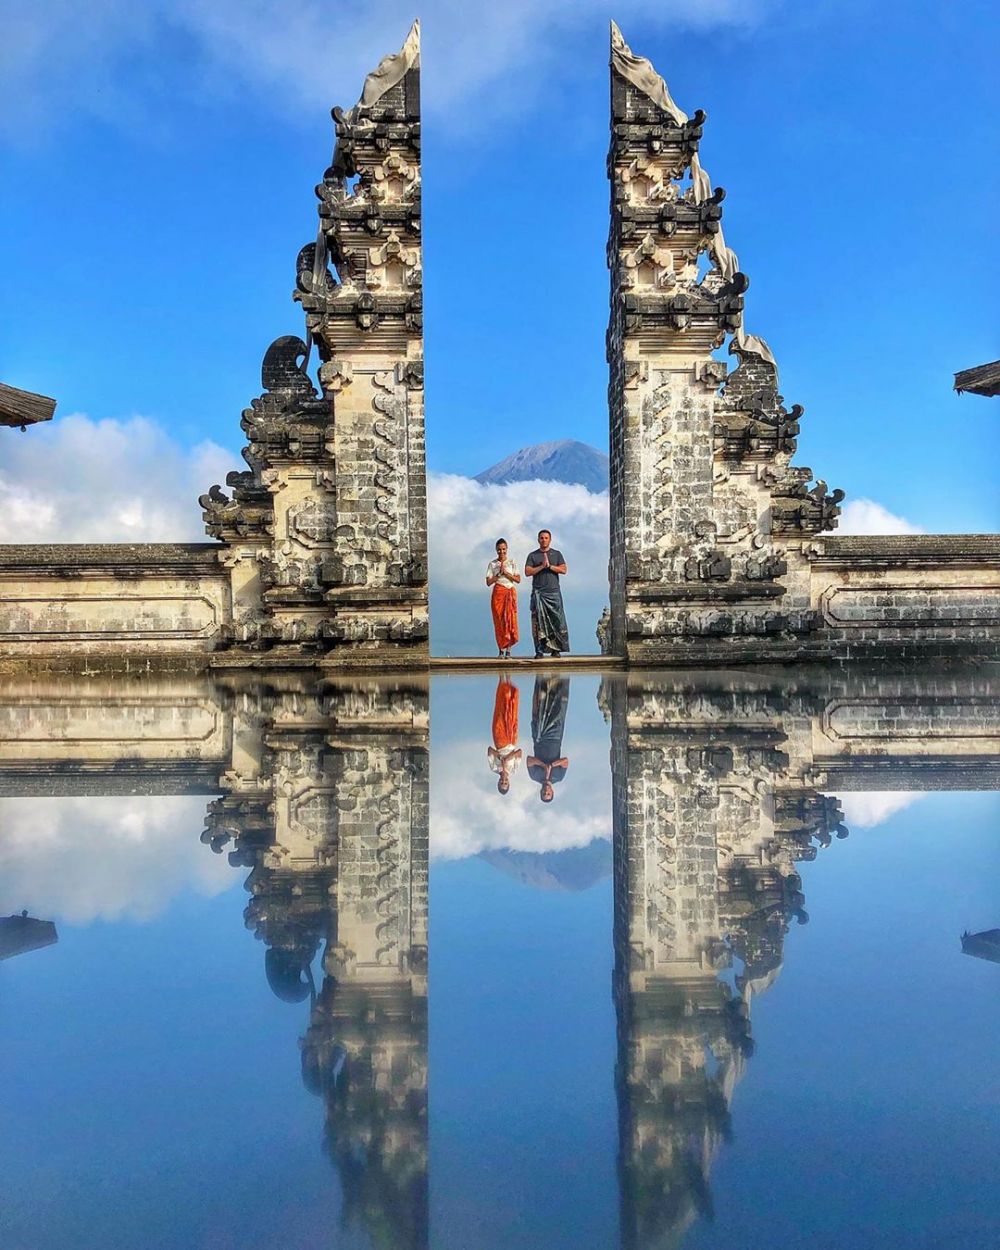 Ini rahasia di balik foto Instagramable tempat wisata di Bali